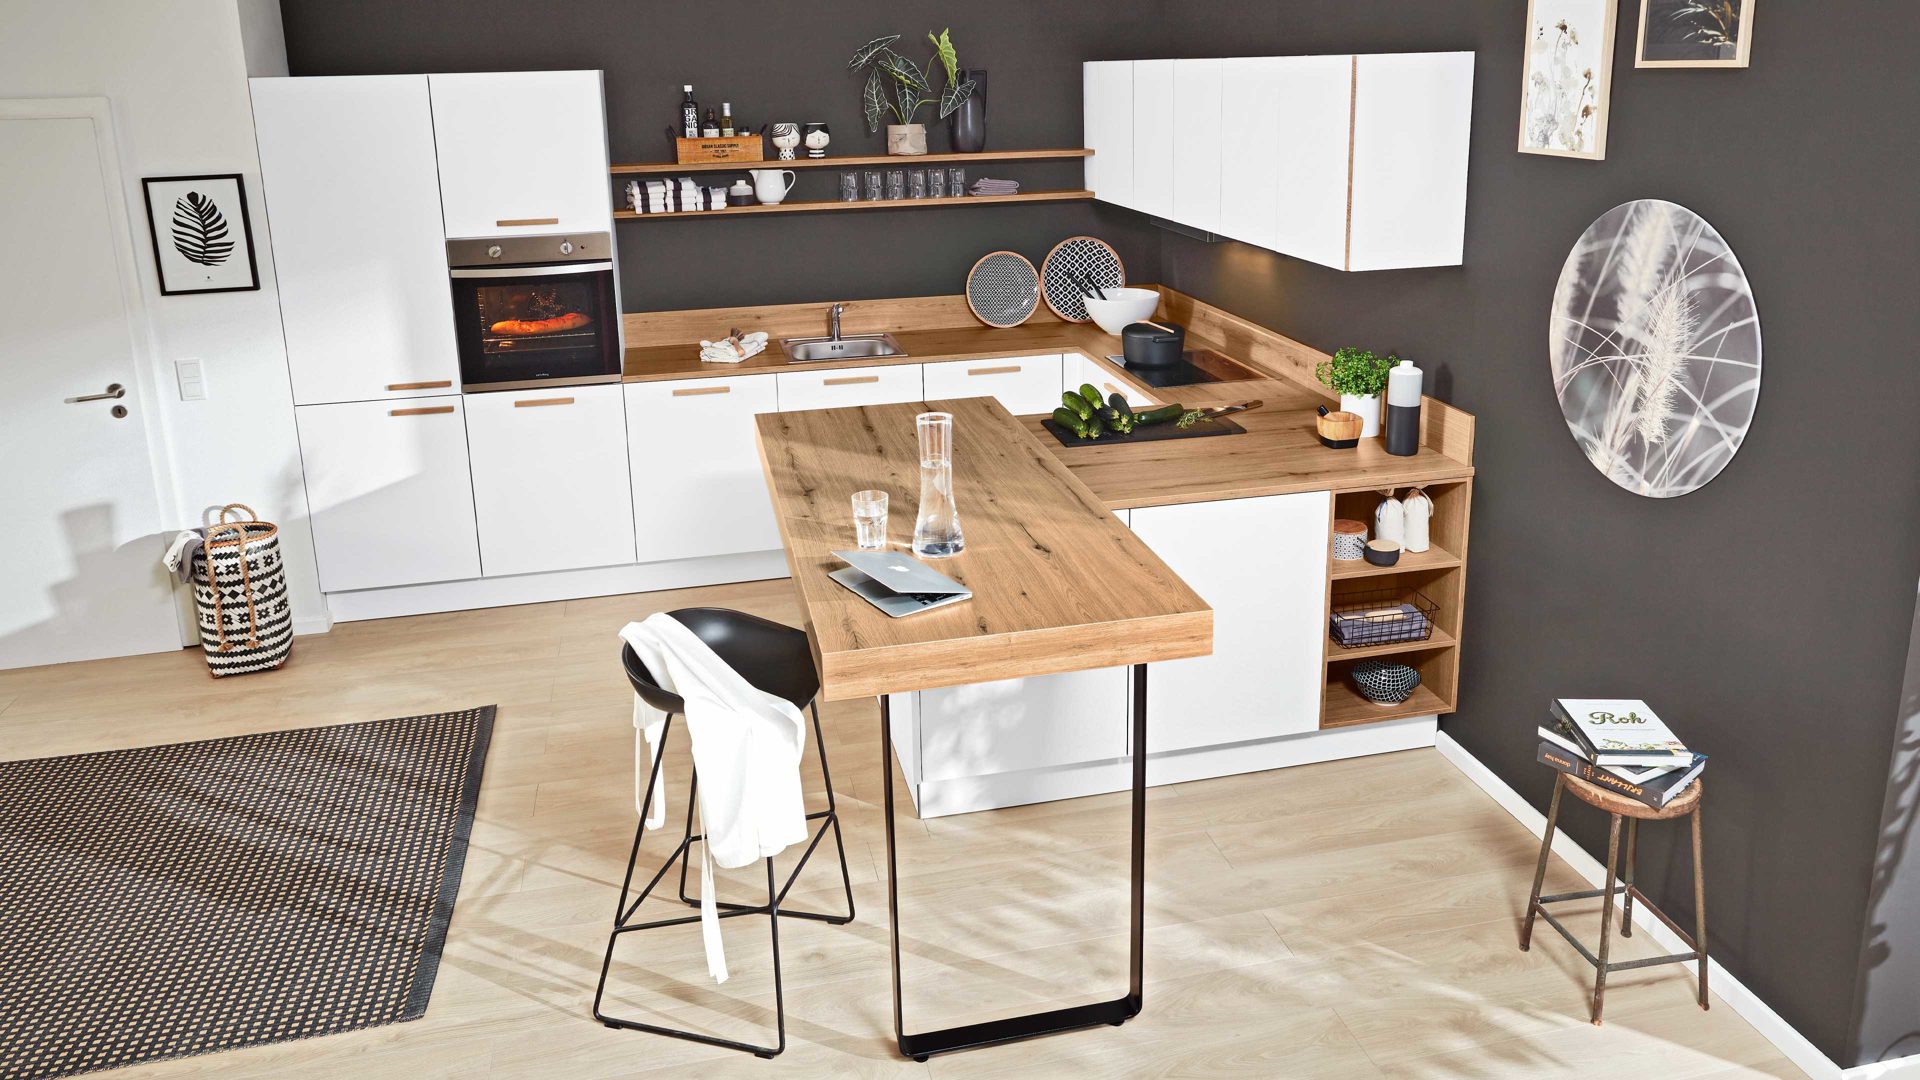 Einbauküche Interliving aus Holz in Weiß Interliving Küche Serie 3043 mit privileg Einbaugeräten Weiß & Vulkaneiche – Stellfläche ca. 365 x 258 cm